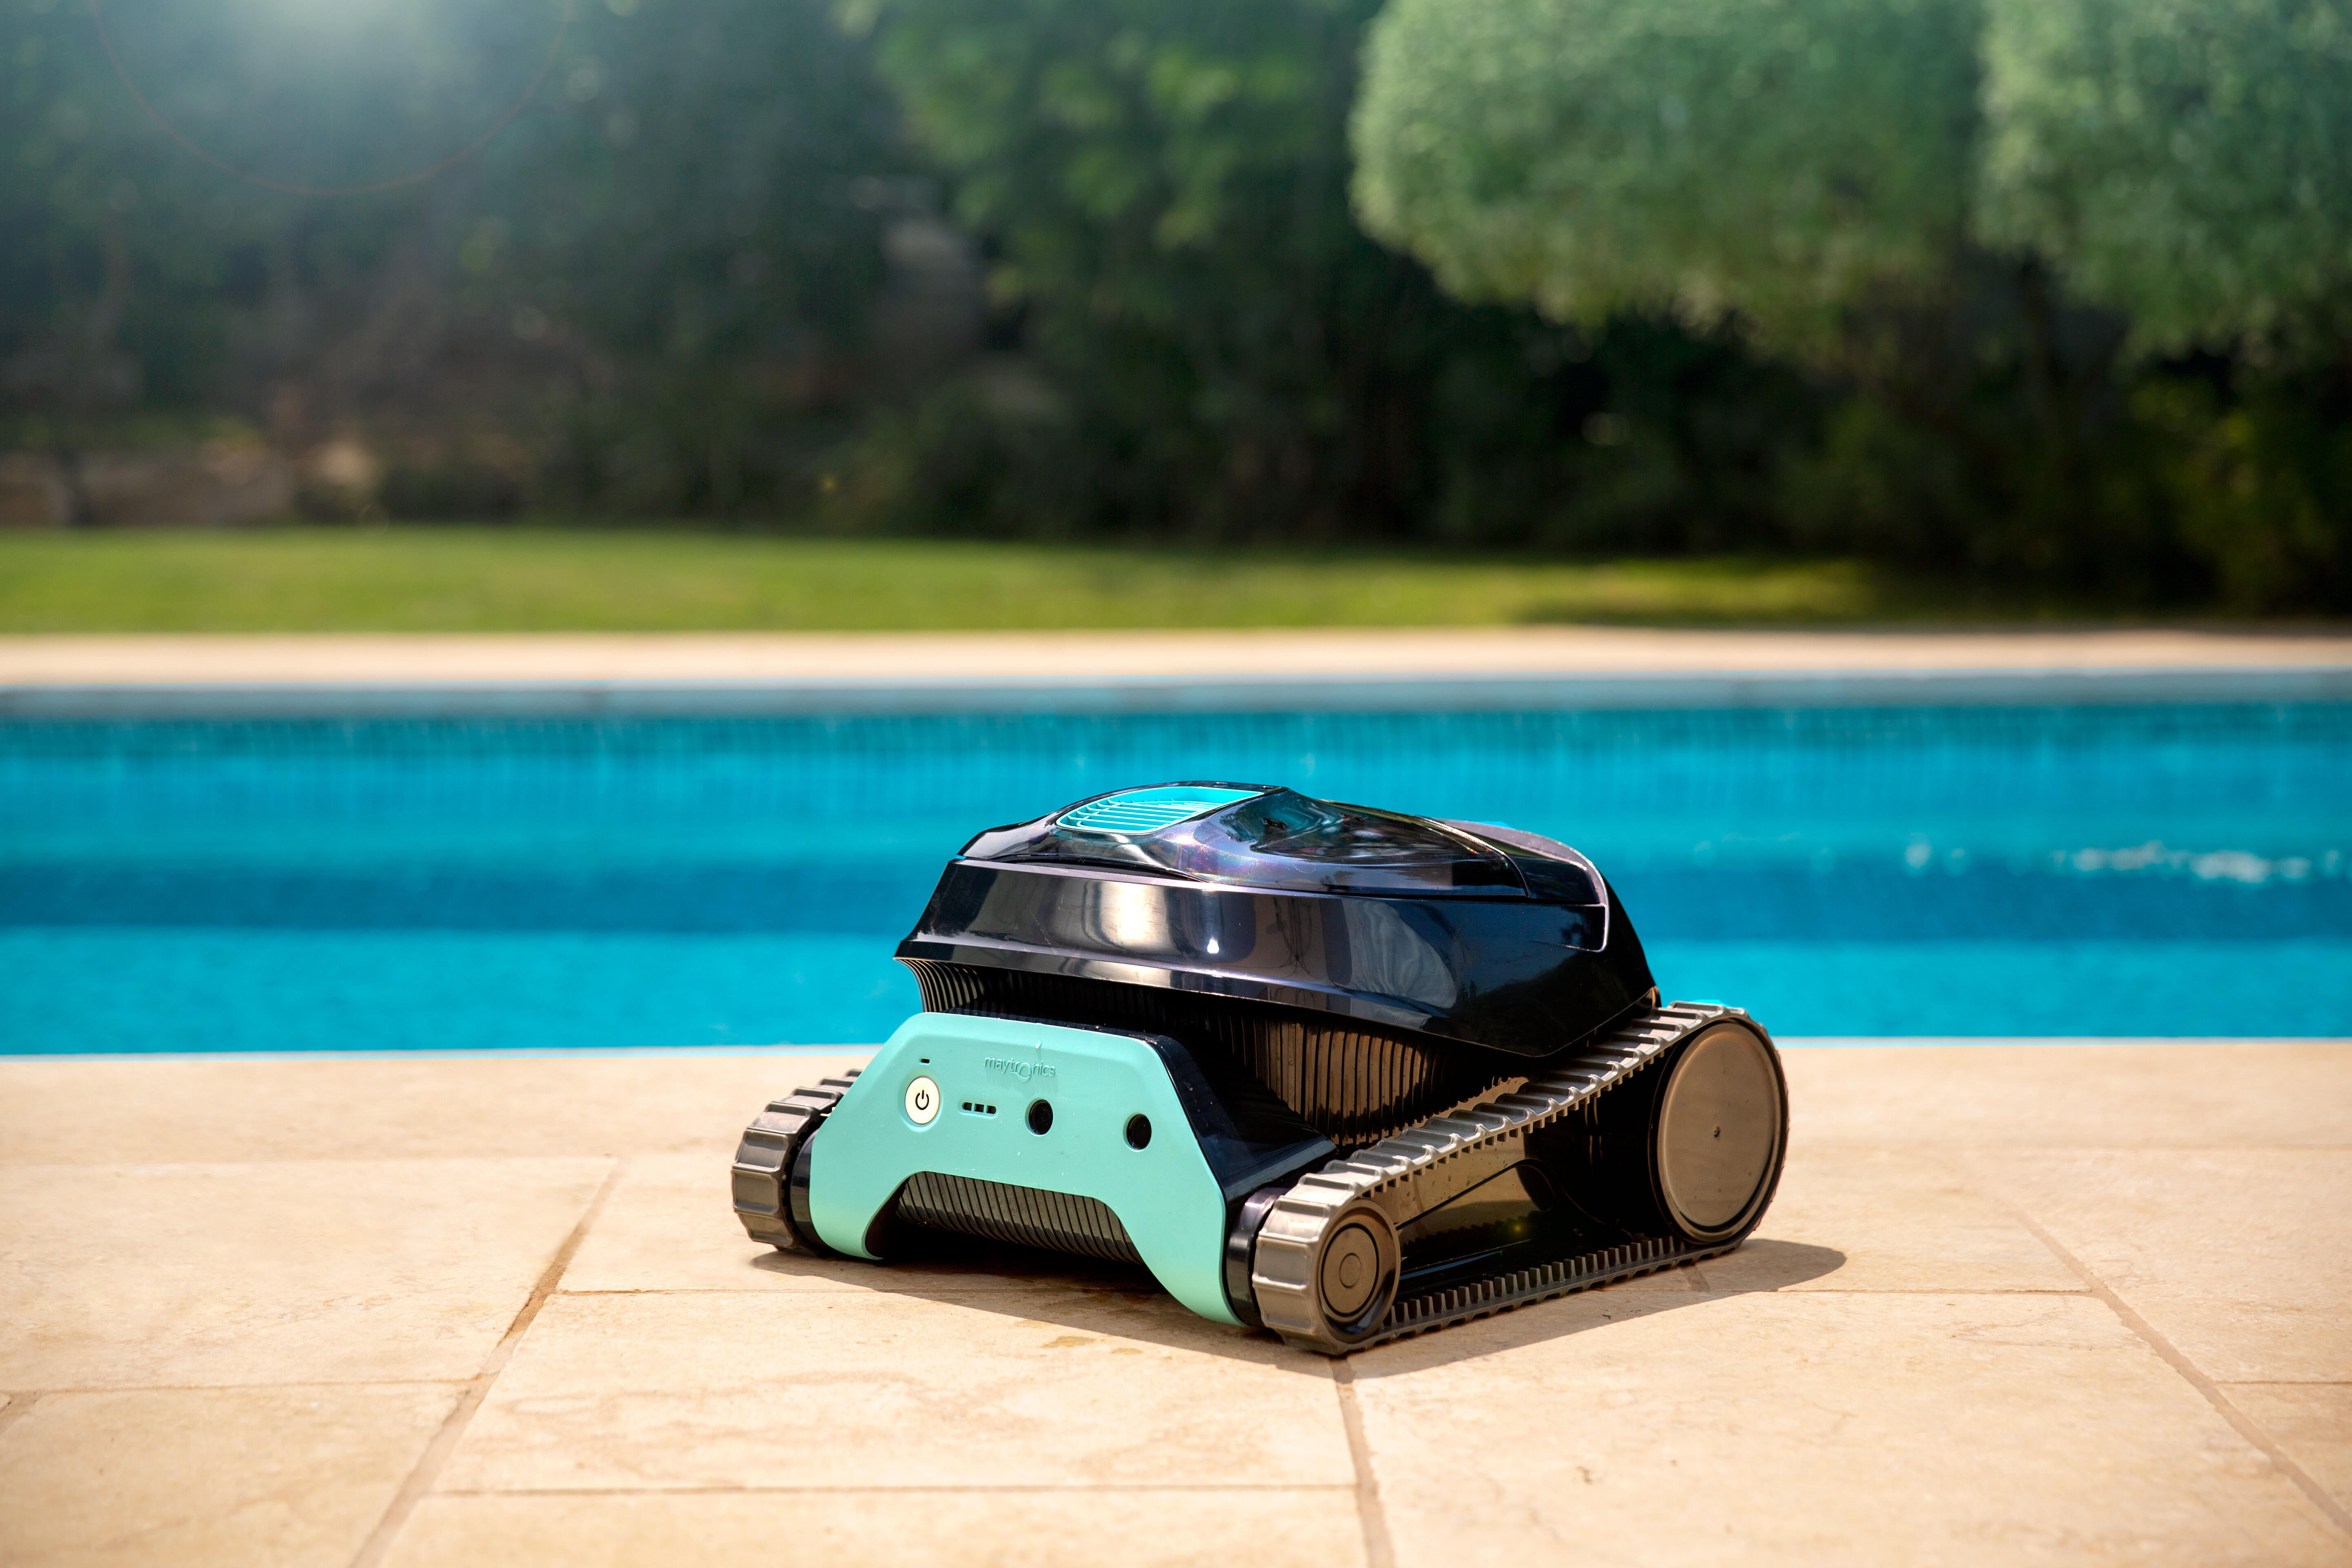 Robot Limpiafondos eléctrico para limpieza de fondo y paredes para piscina  máximo de 10 x 5 m.